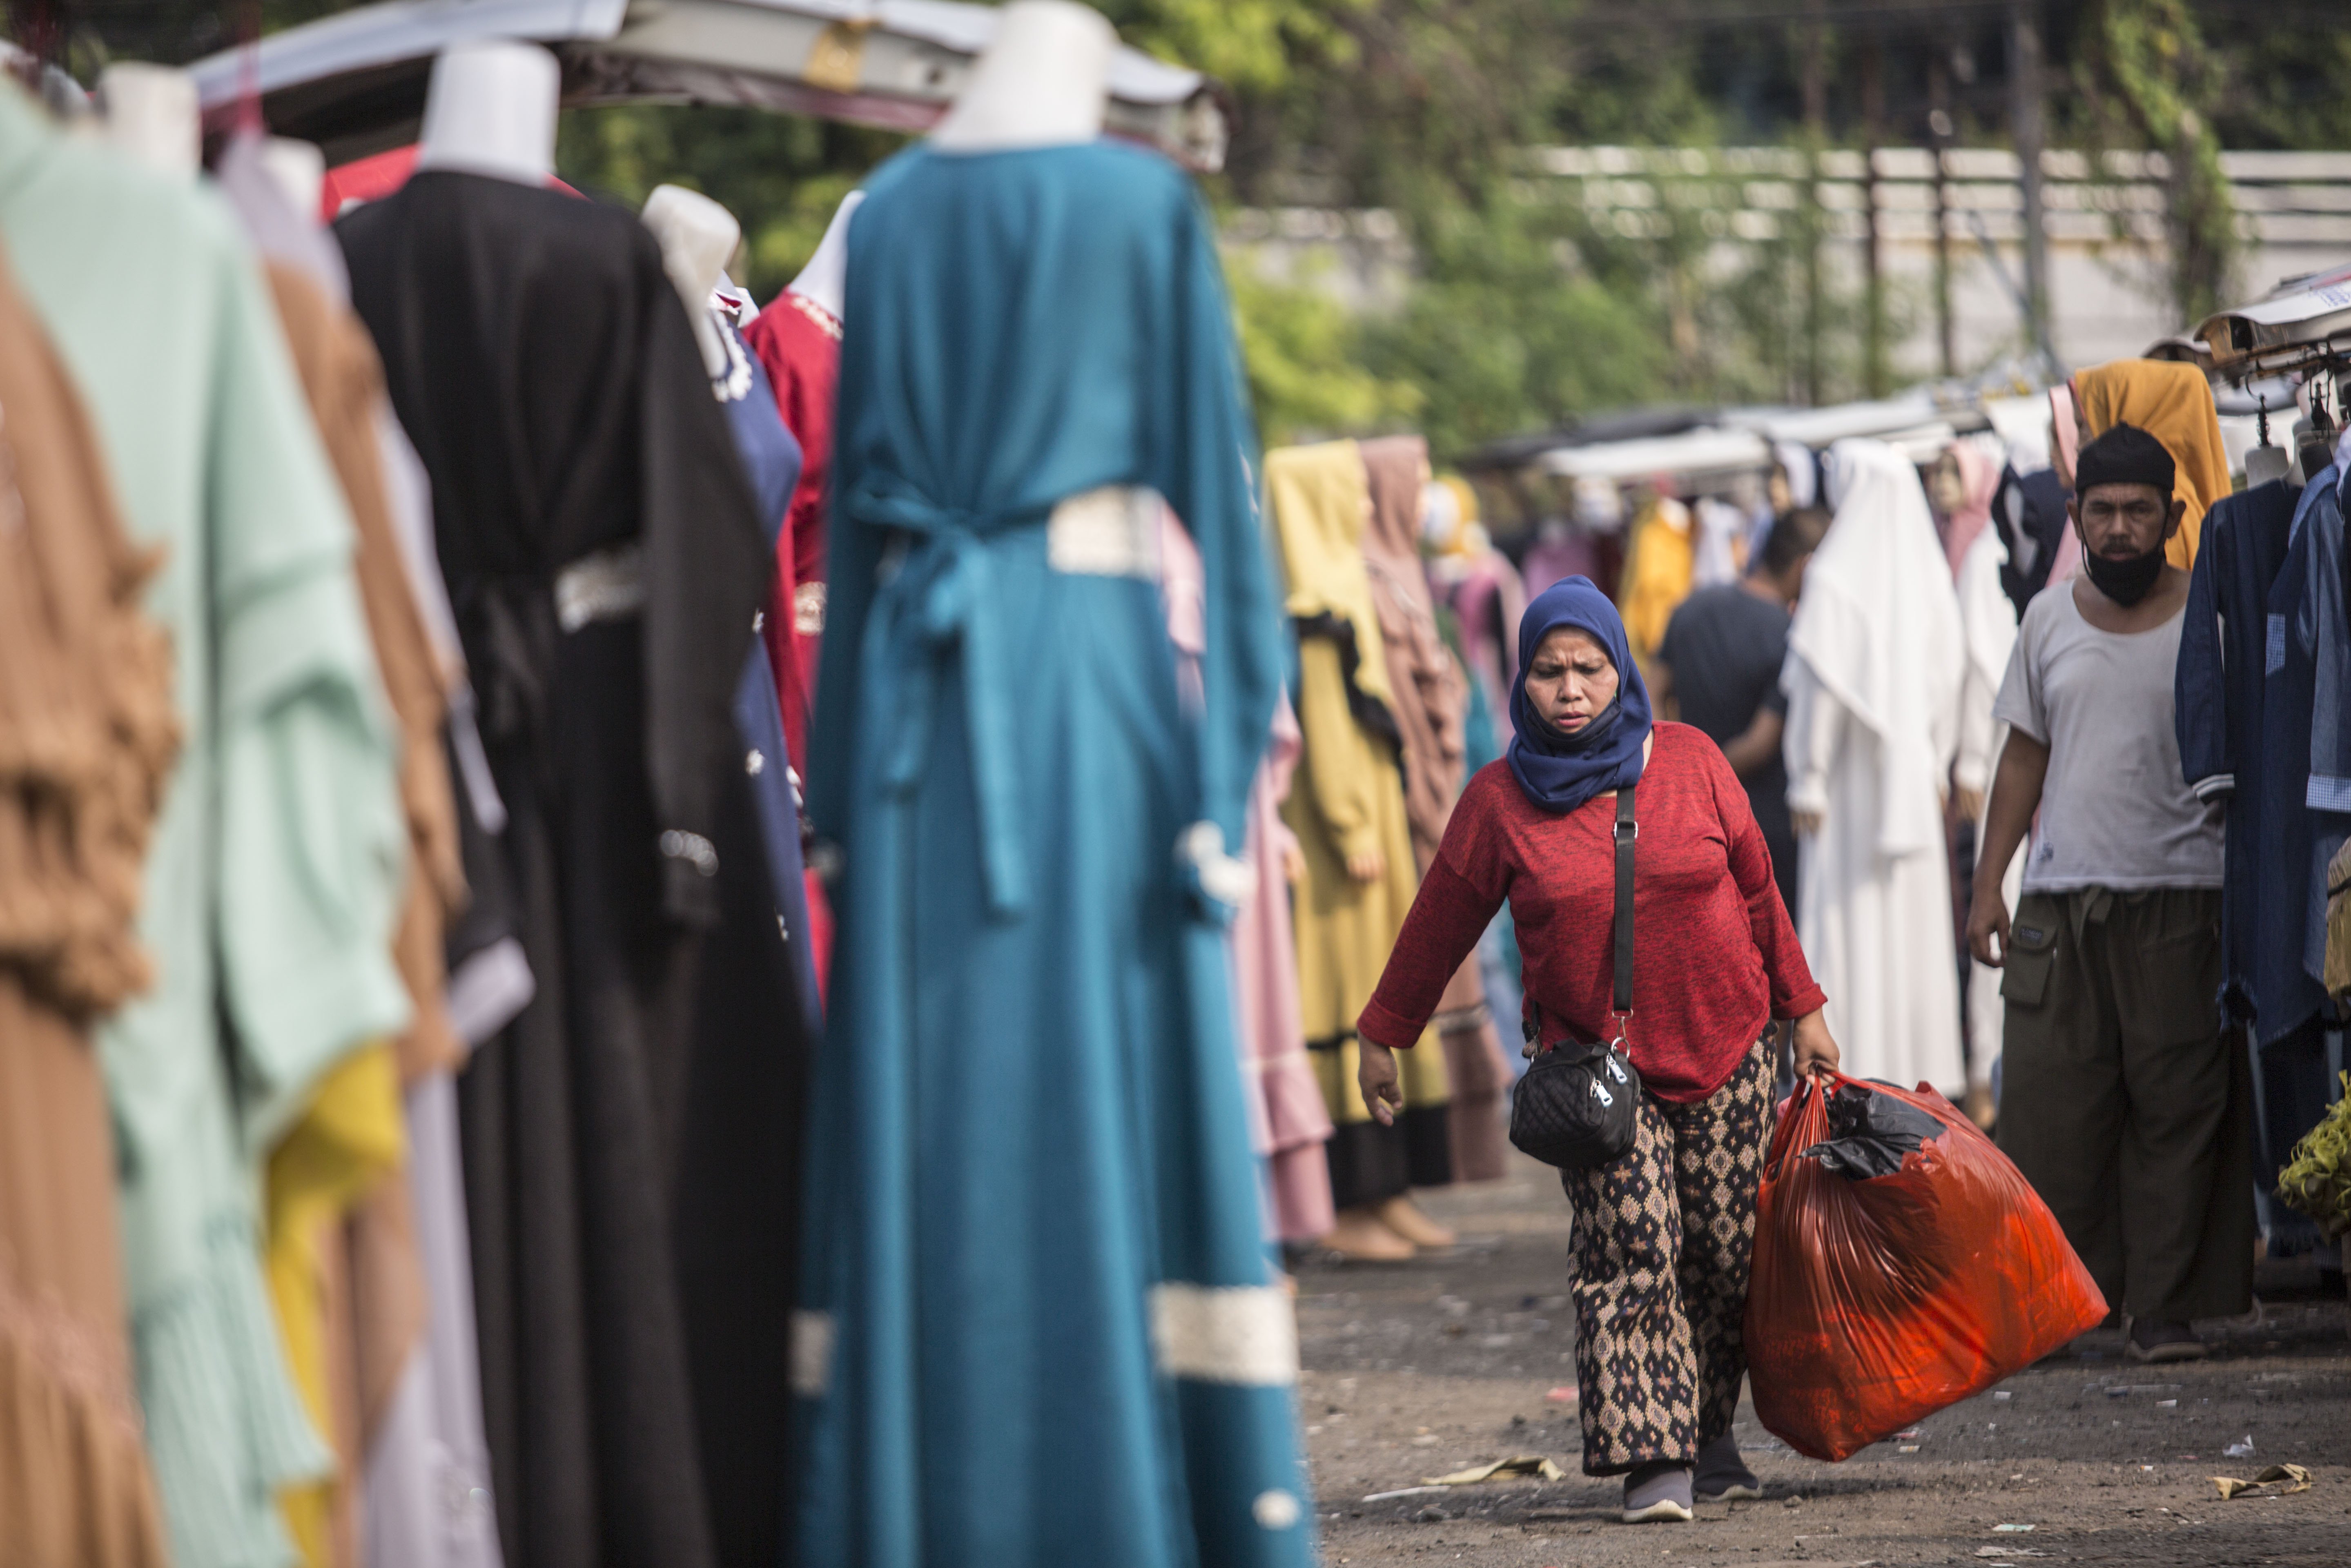 Warga saat berbelanja pakaian di Pasar Tasik, Cideng, Jakarta, Kamis (11/6/2020). Sempat ditutup sejak April lalu, kini Pasar Tasik kembali buka pada masa transisi Pembasatan Sosial Bersekala Besar (PSBB) dengan menerapkan protokol kesehatan serta pembatasan jumlah pengunjung.